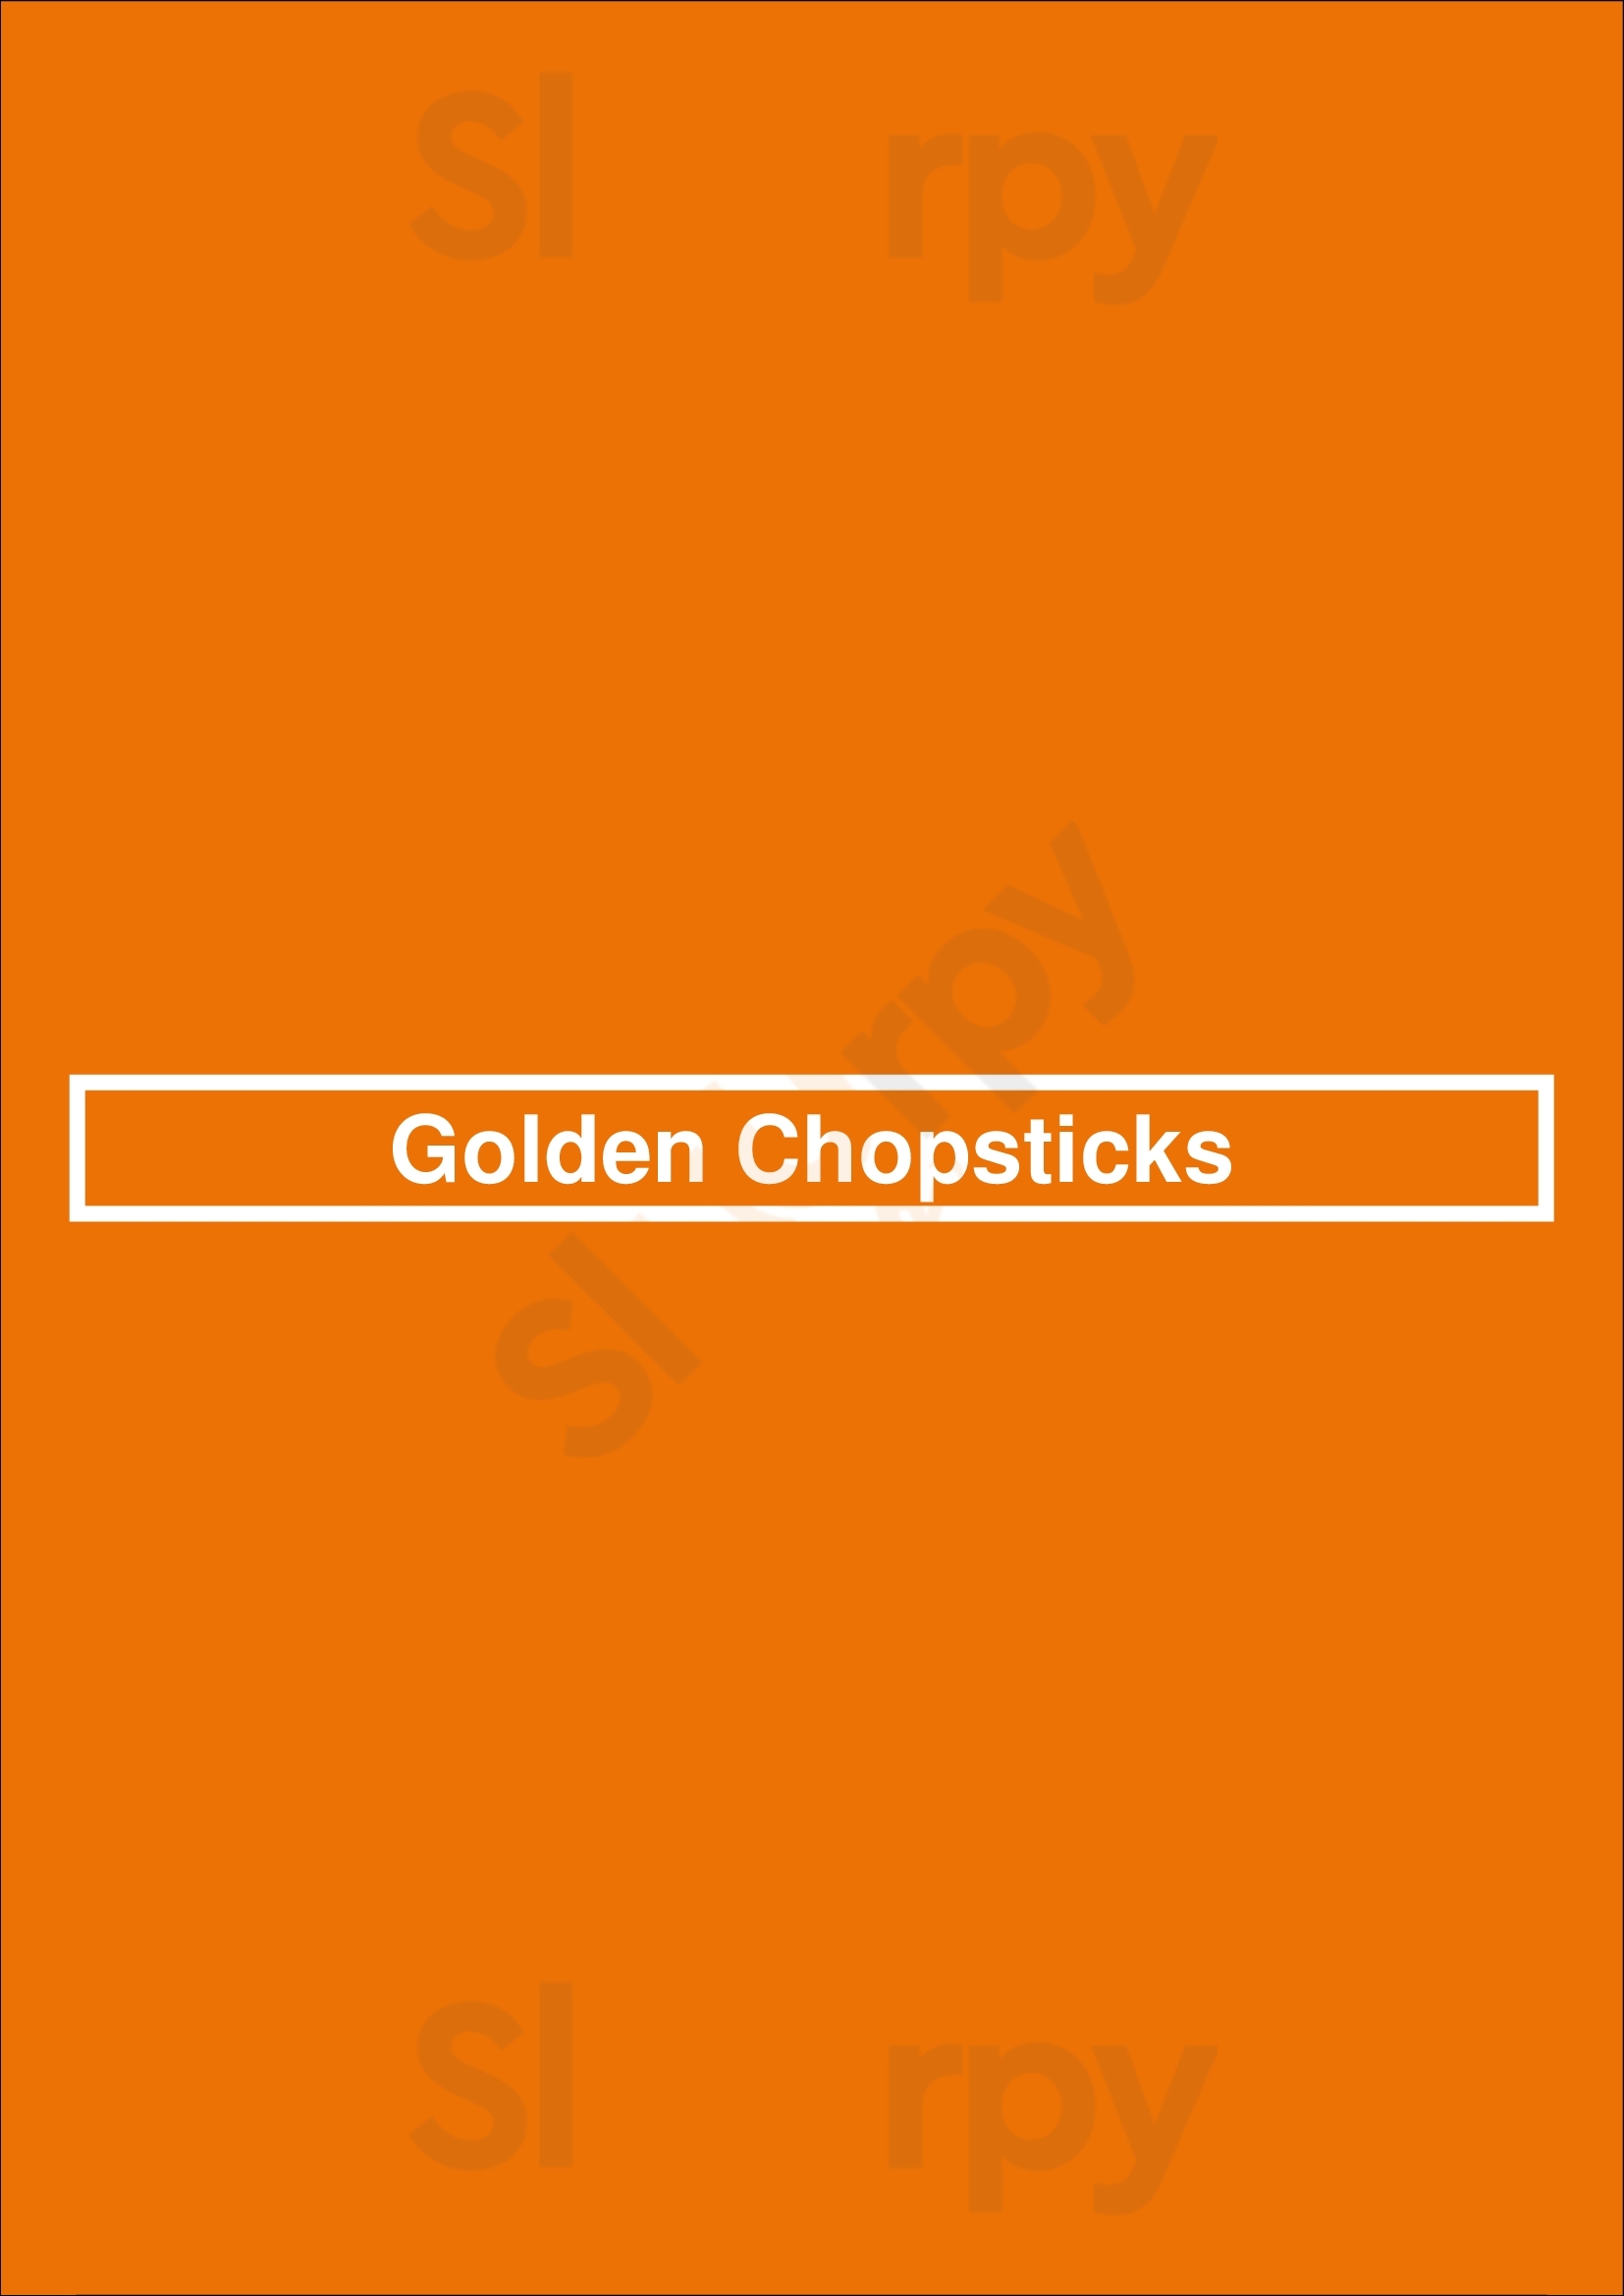 Golden Chopsticks Thornhill Menu - 1